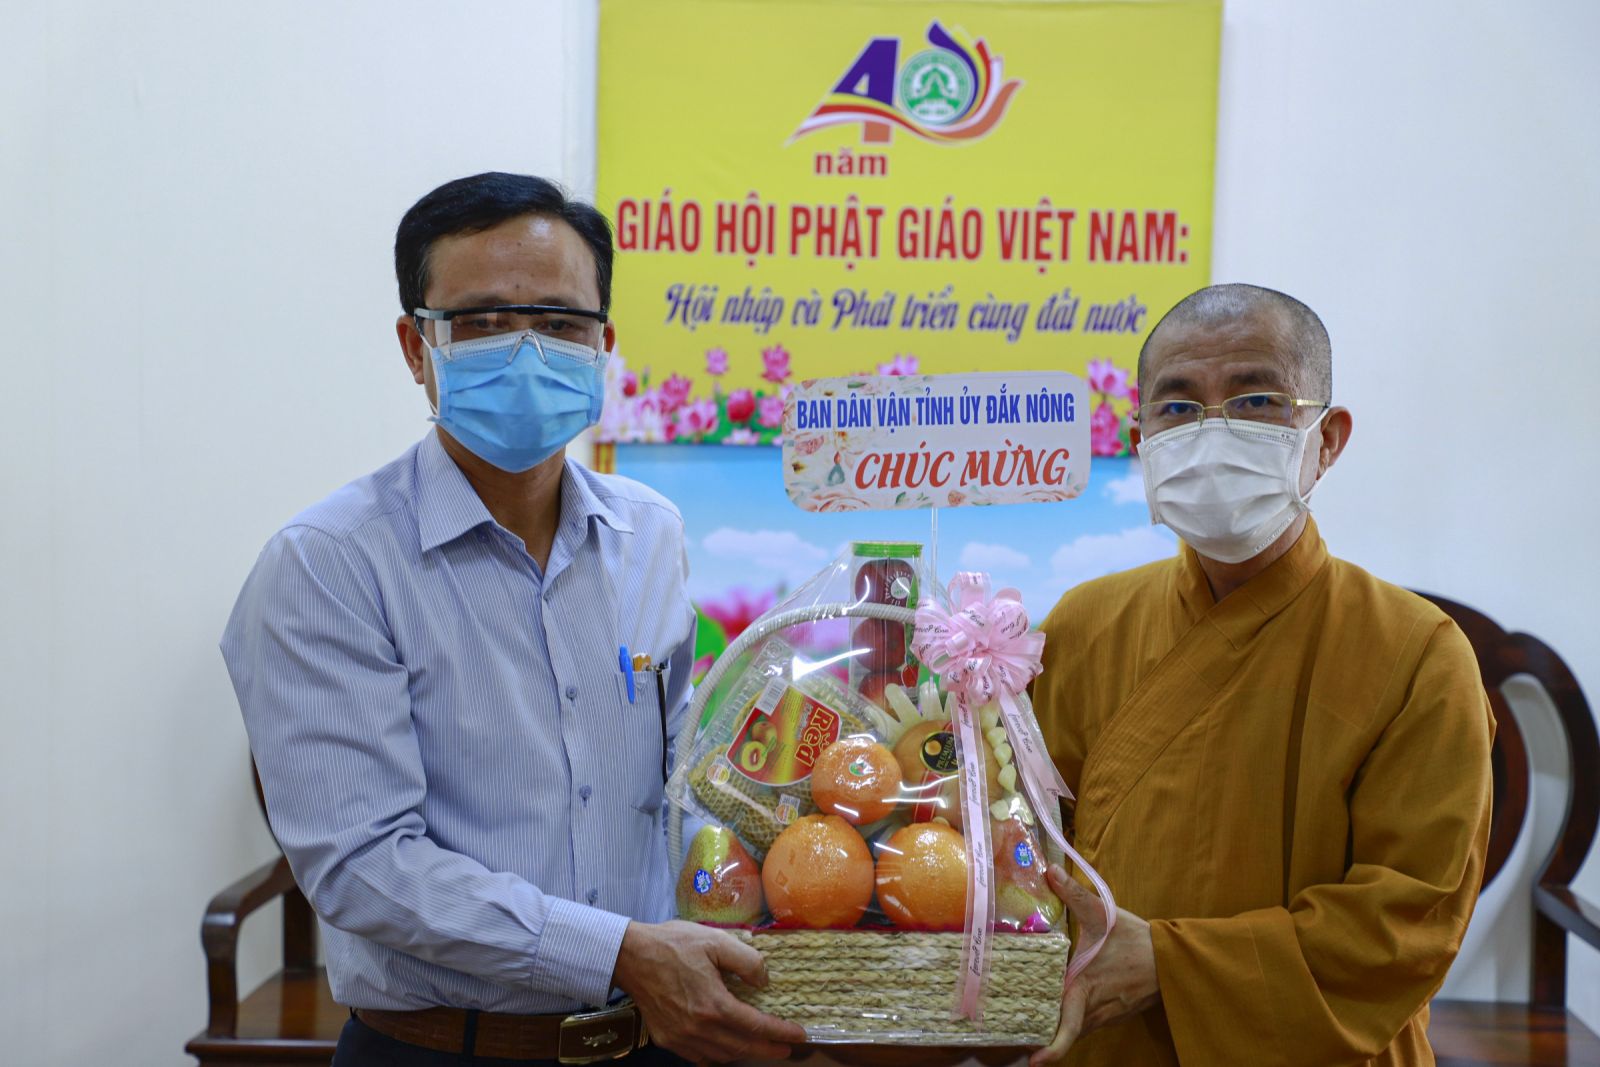 Ban Dân vận tỉnh Đăk Nông chúc mừng Kỷ niệm 40 năm thành lập GHPGVN đến chùa Pháp Hoa.